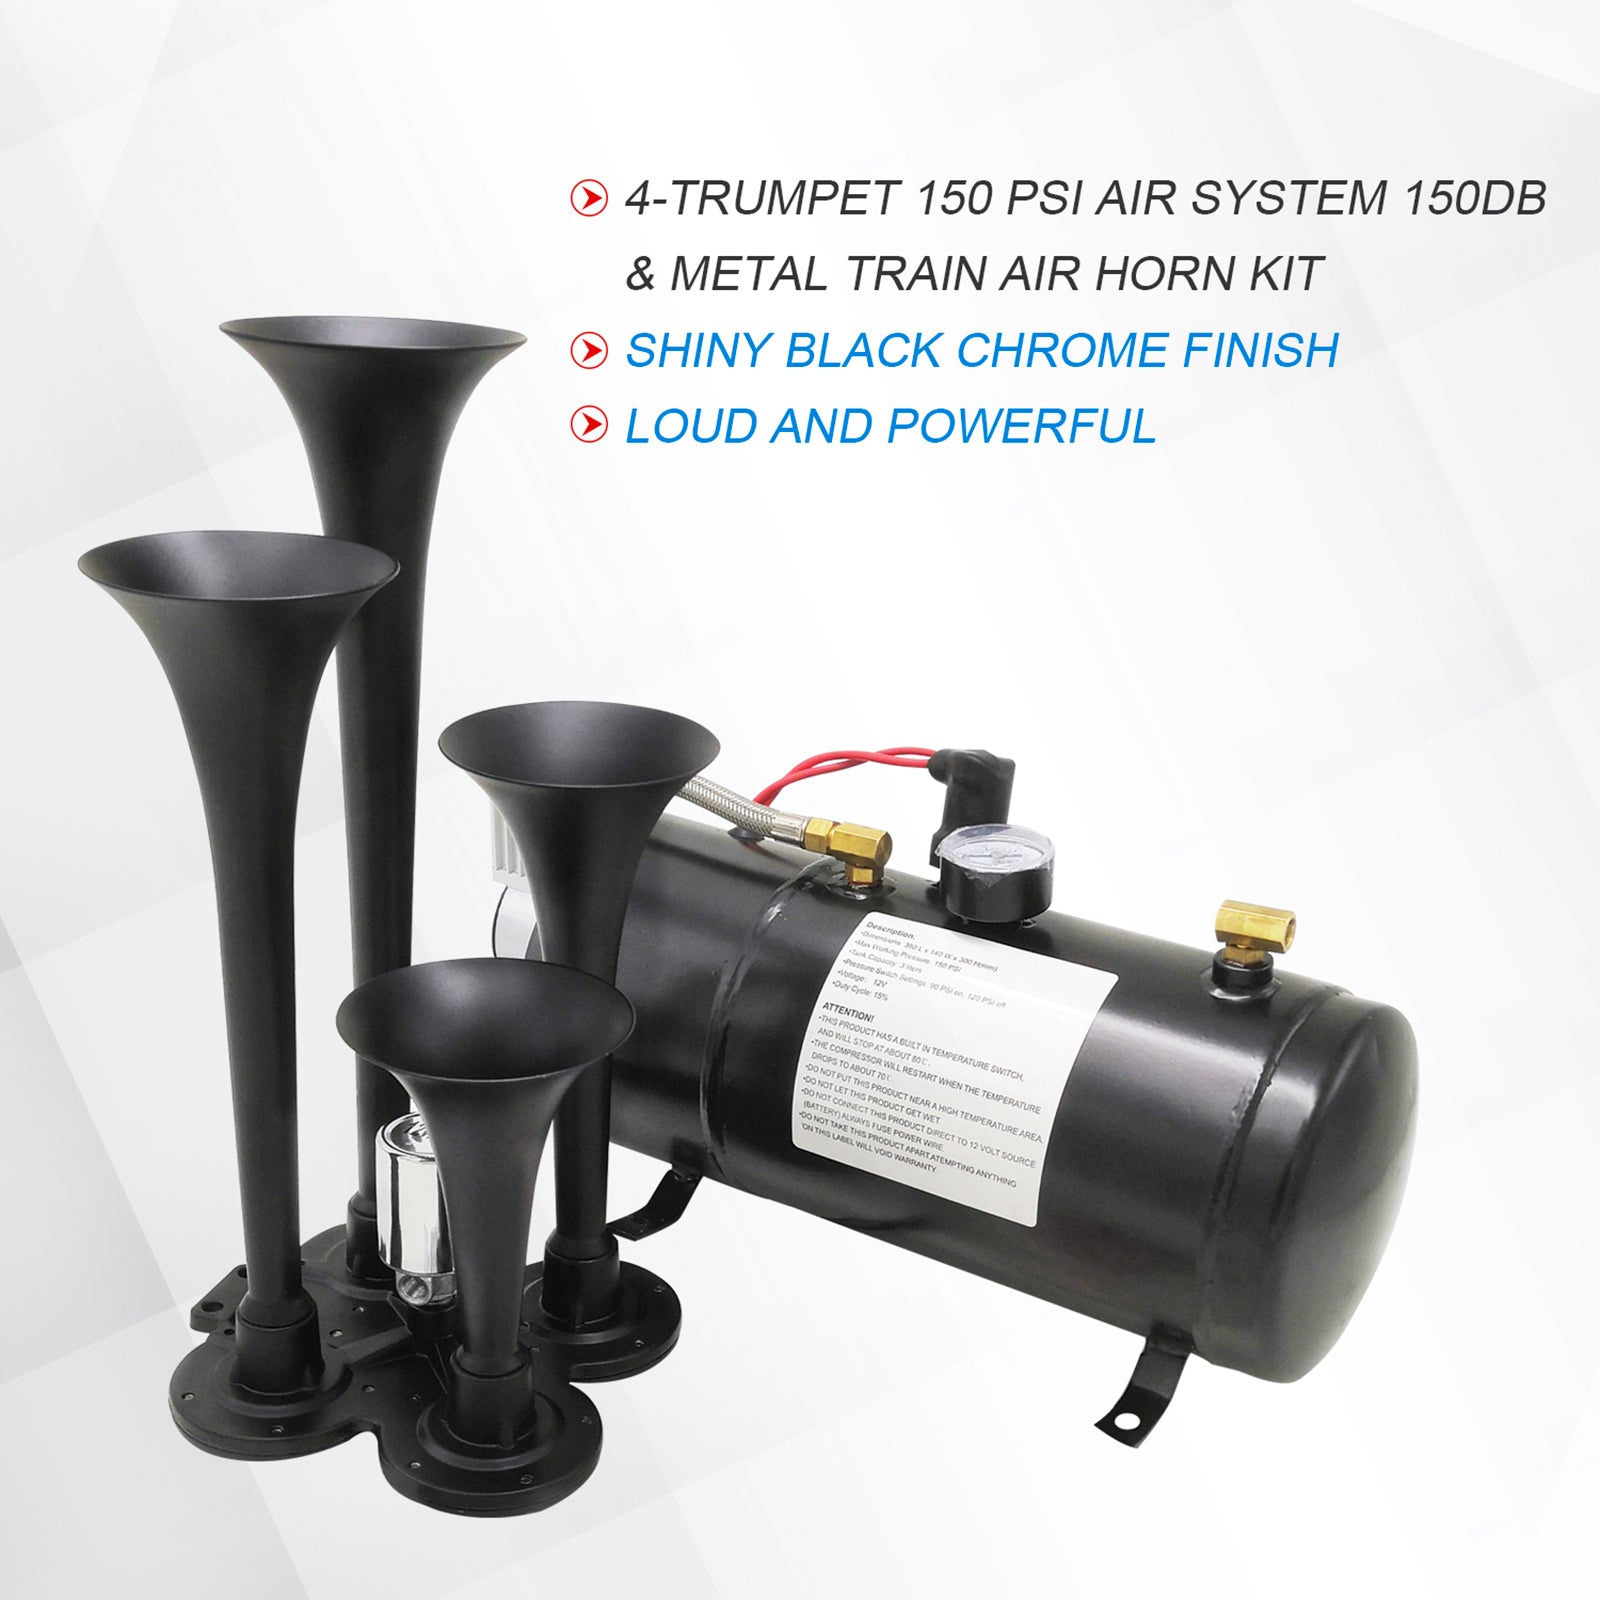 JDMSPEED 150DB 4 Trumpet Air Train Horn 150 PSI Air Compressor Kit